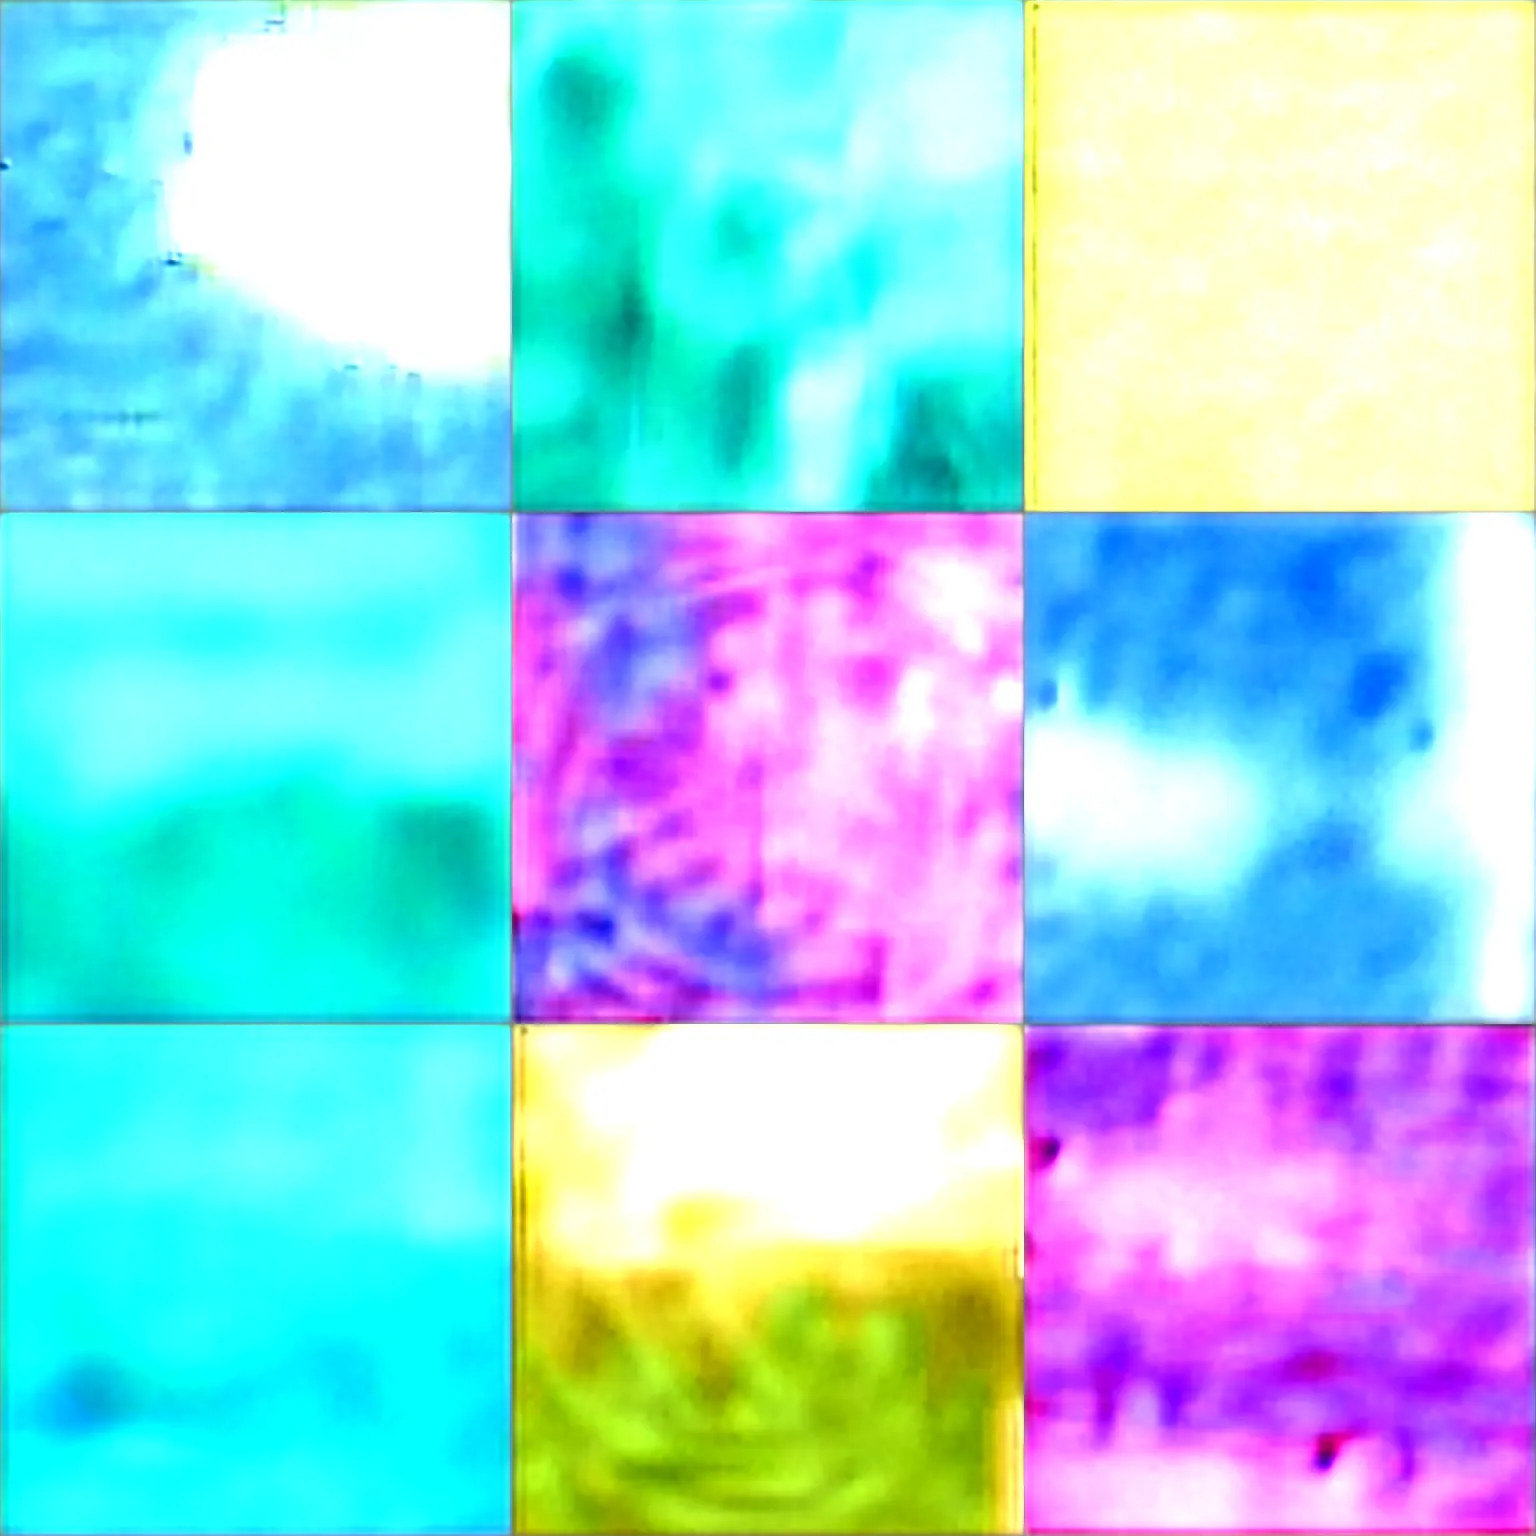 Image similar to fractal